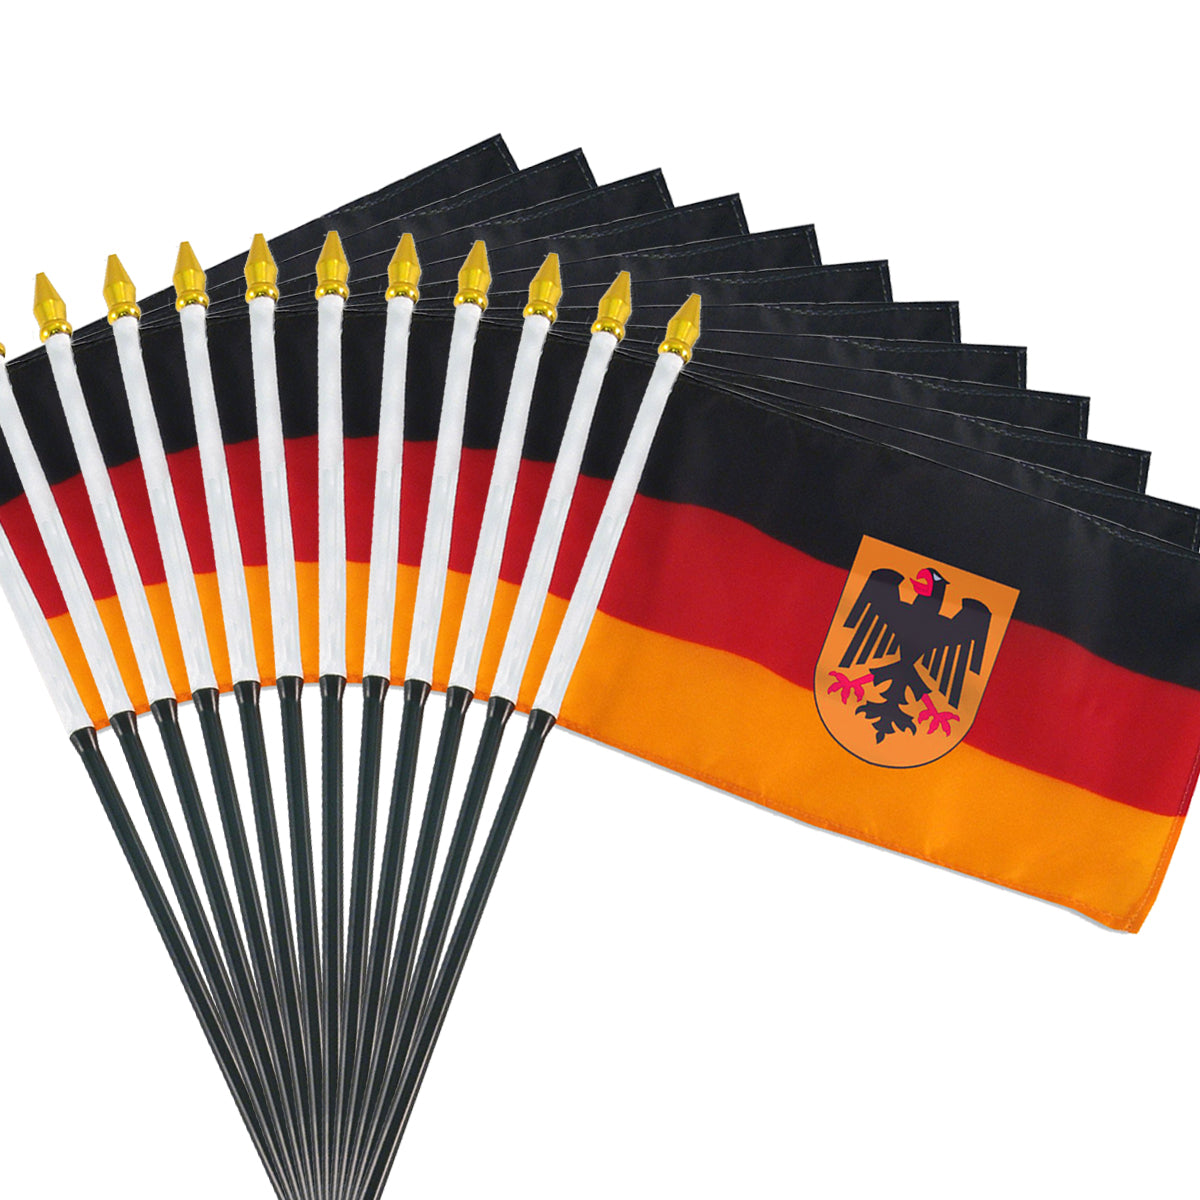 4x6 Inch German Flag